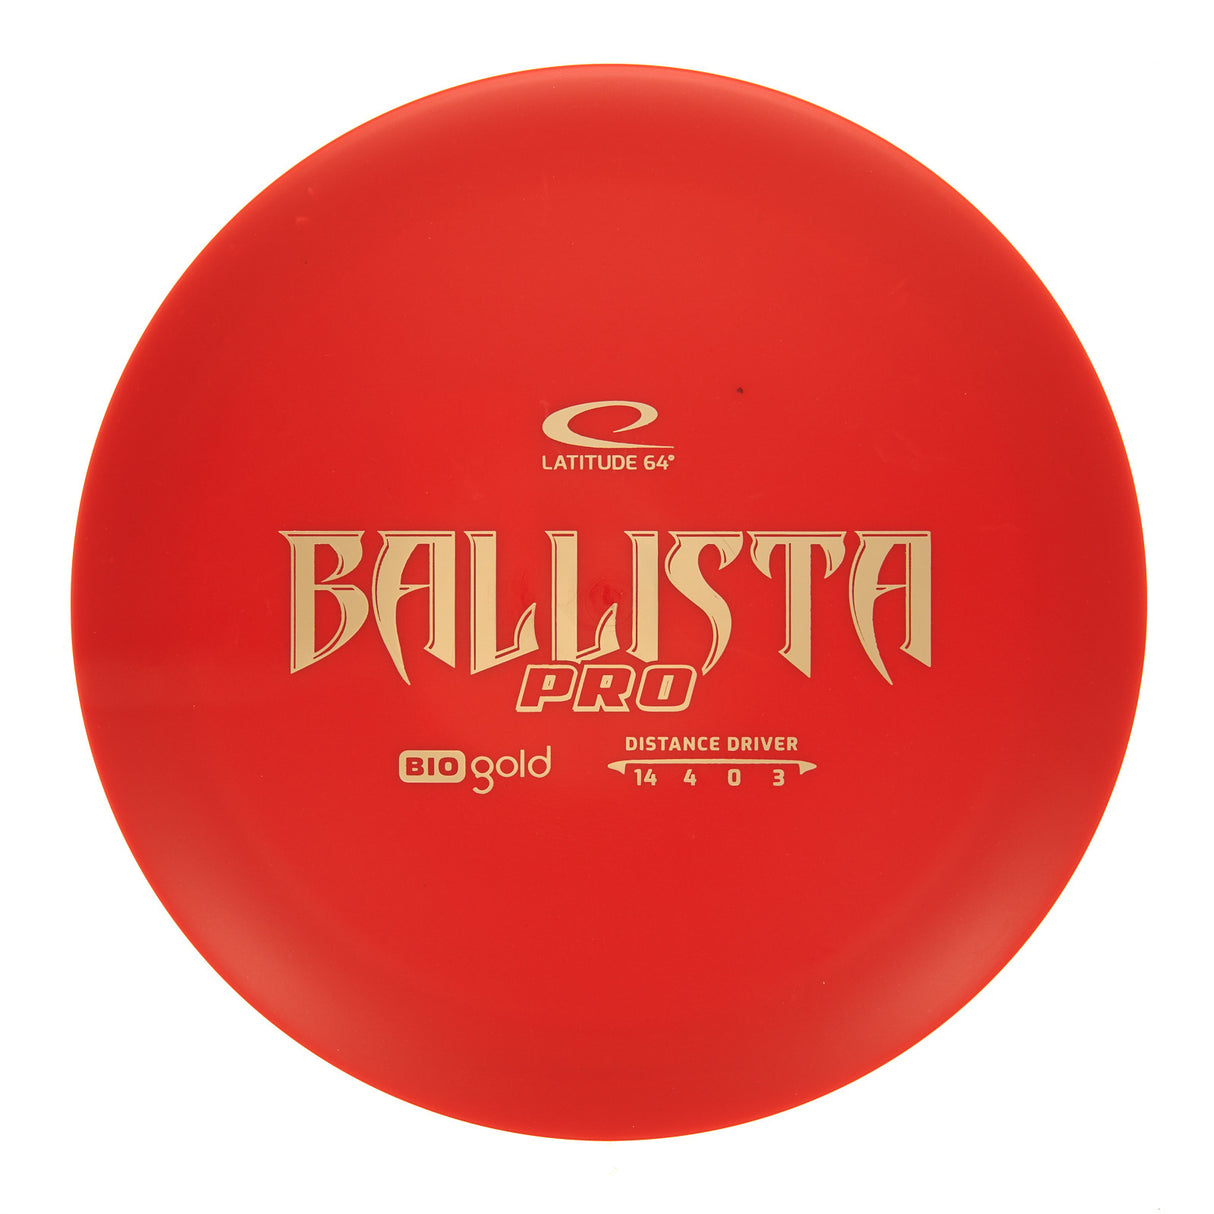 Latitude 64 Ballista Pro - Bio Gold 171g | Style 0007